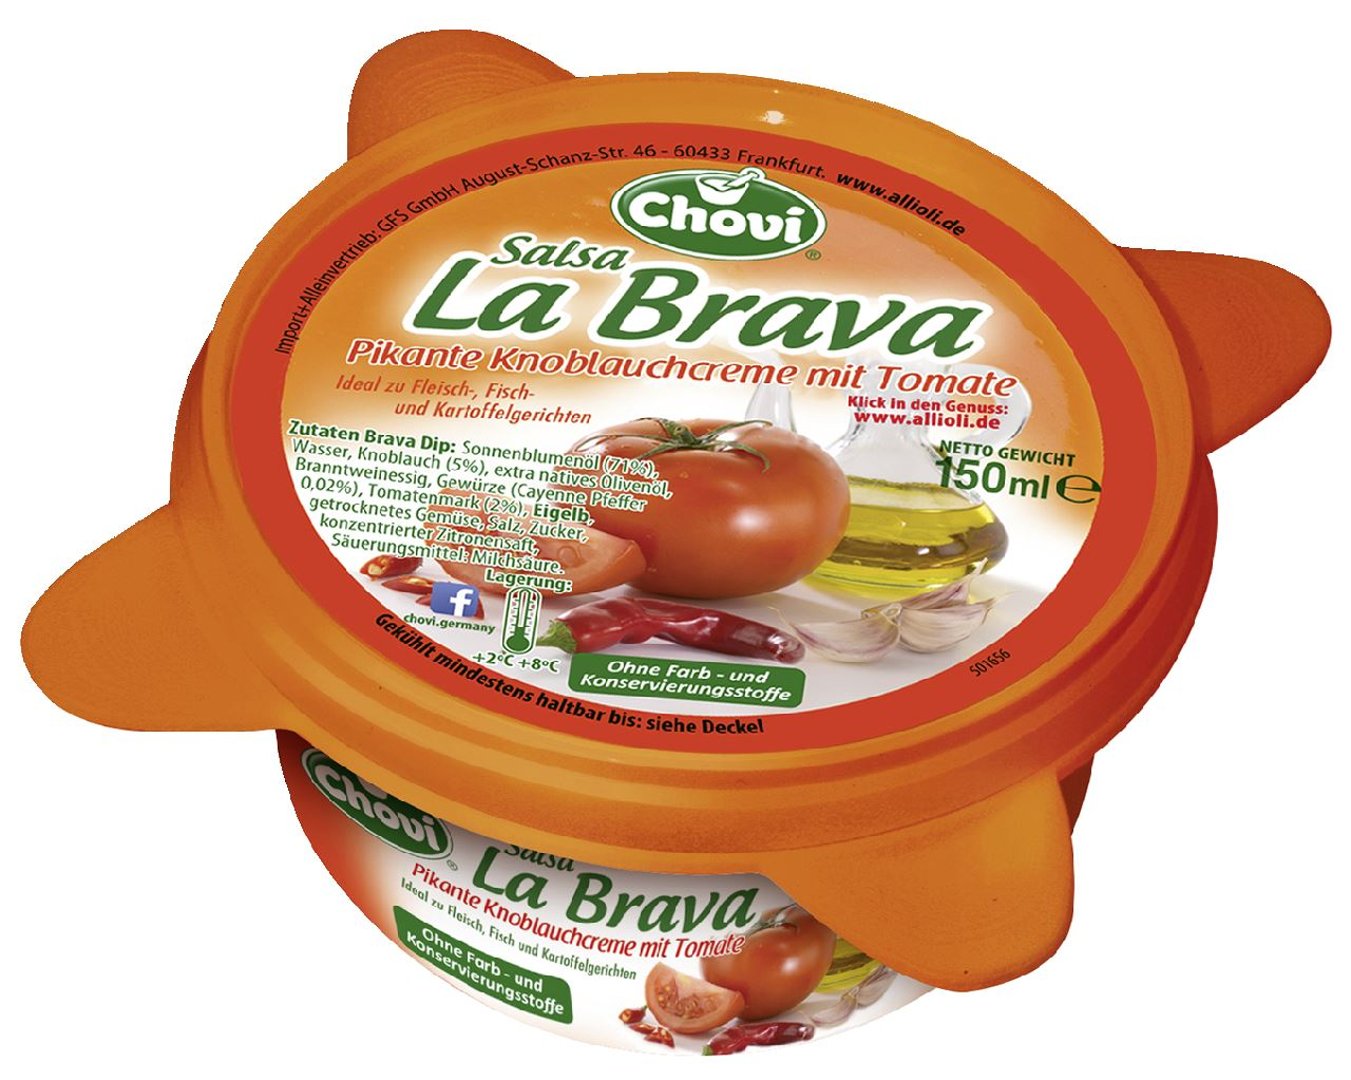 Chovi - Allioli Salsa La Brava Dip pikante Knoblauchcreme mit Tomate - 150 ml Becher